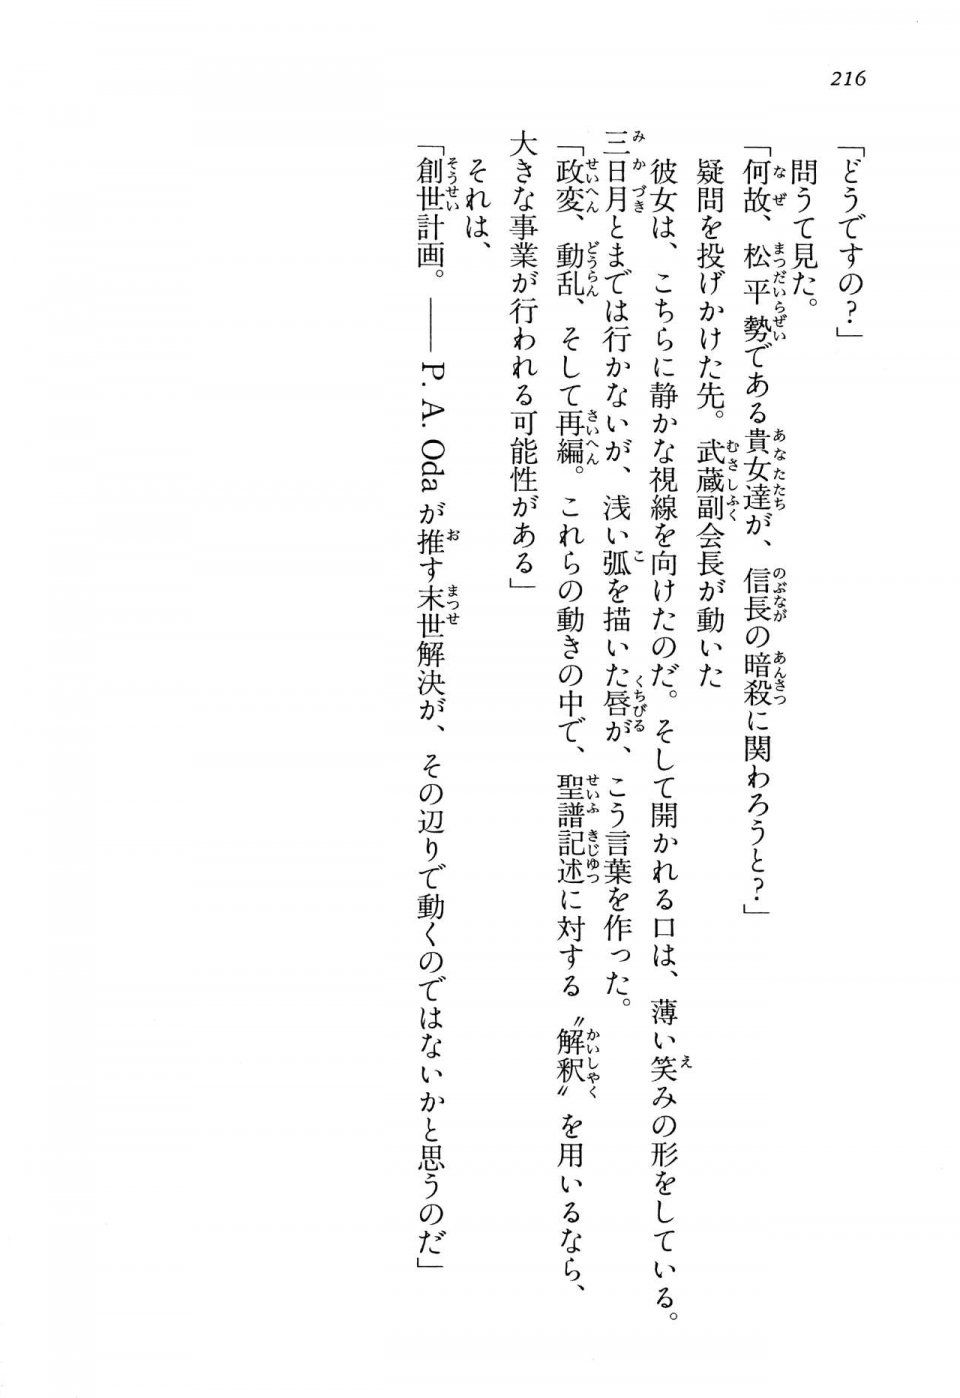 Kyoukai Senjou no Horizon LN Vol 13(6A) - Photo #216